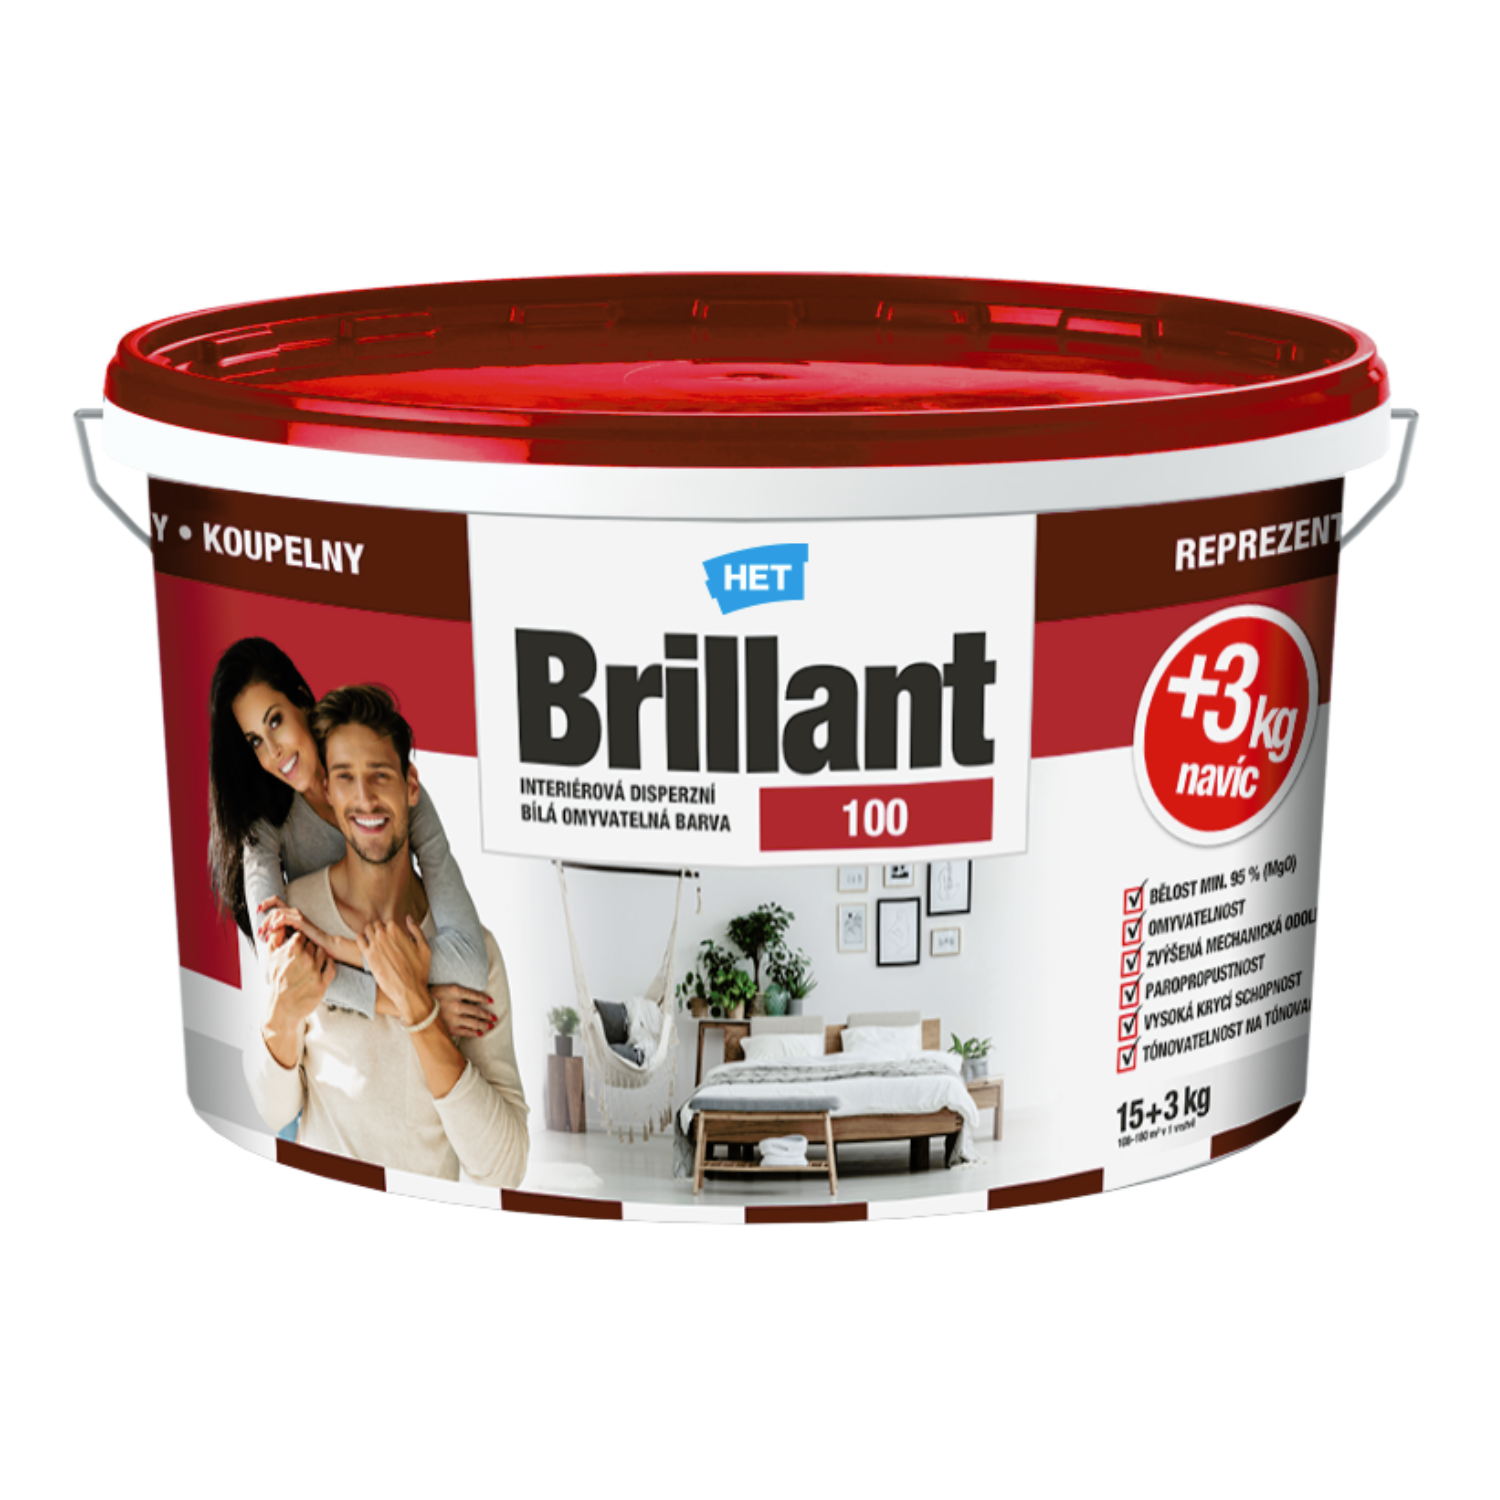 HET Brillant 100 interiérová disperzná umývateľná farba 7 kg + 1 zdarma